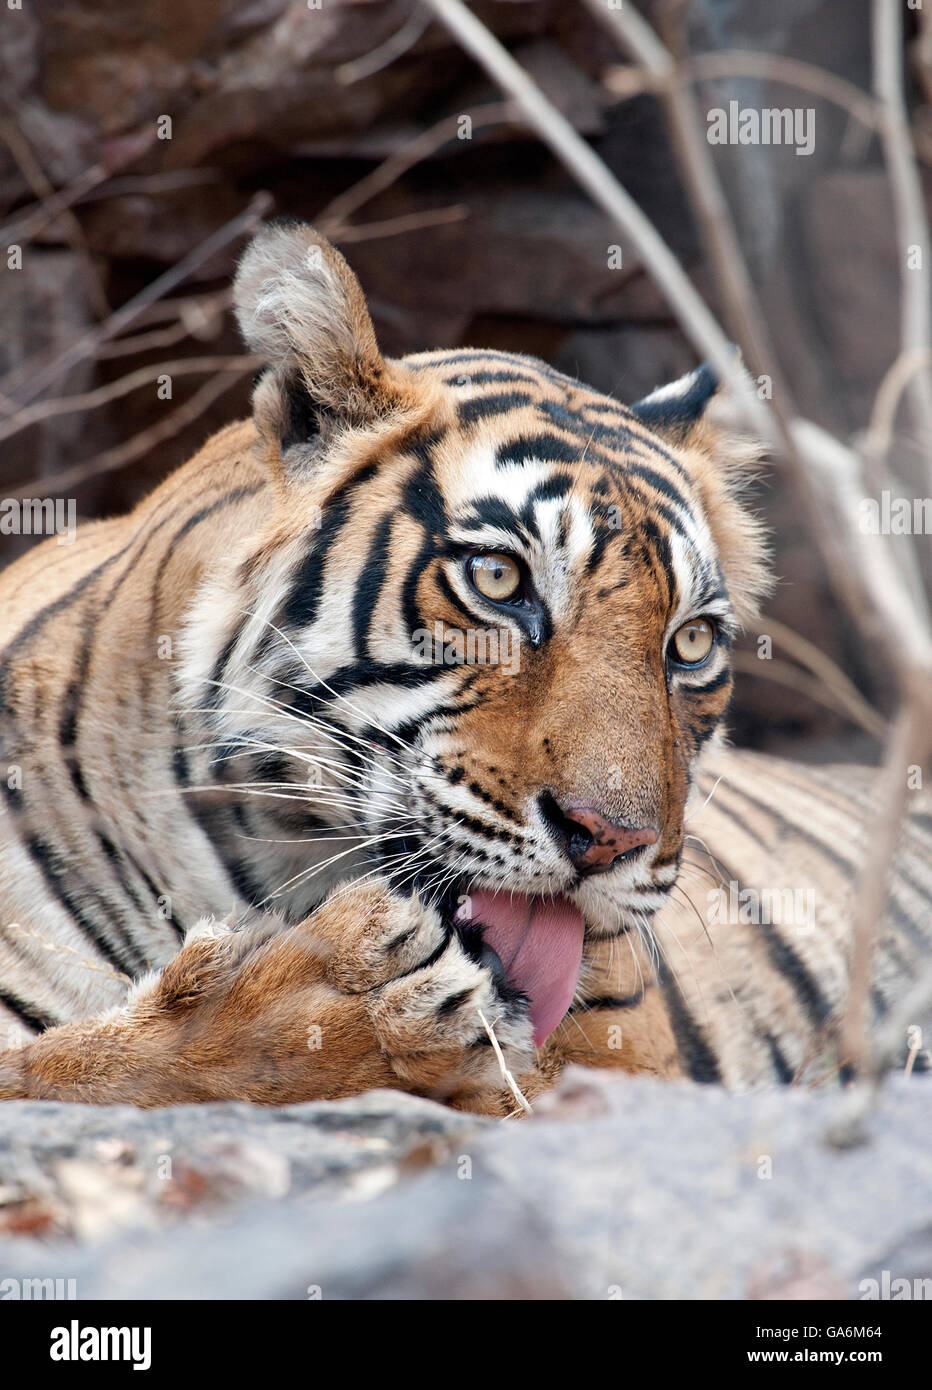 L'image de Tiger ( Panthera tigris ) T39, Noor a été prise à Ranthambore, Inde Banque D'Images